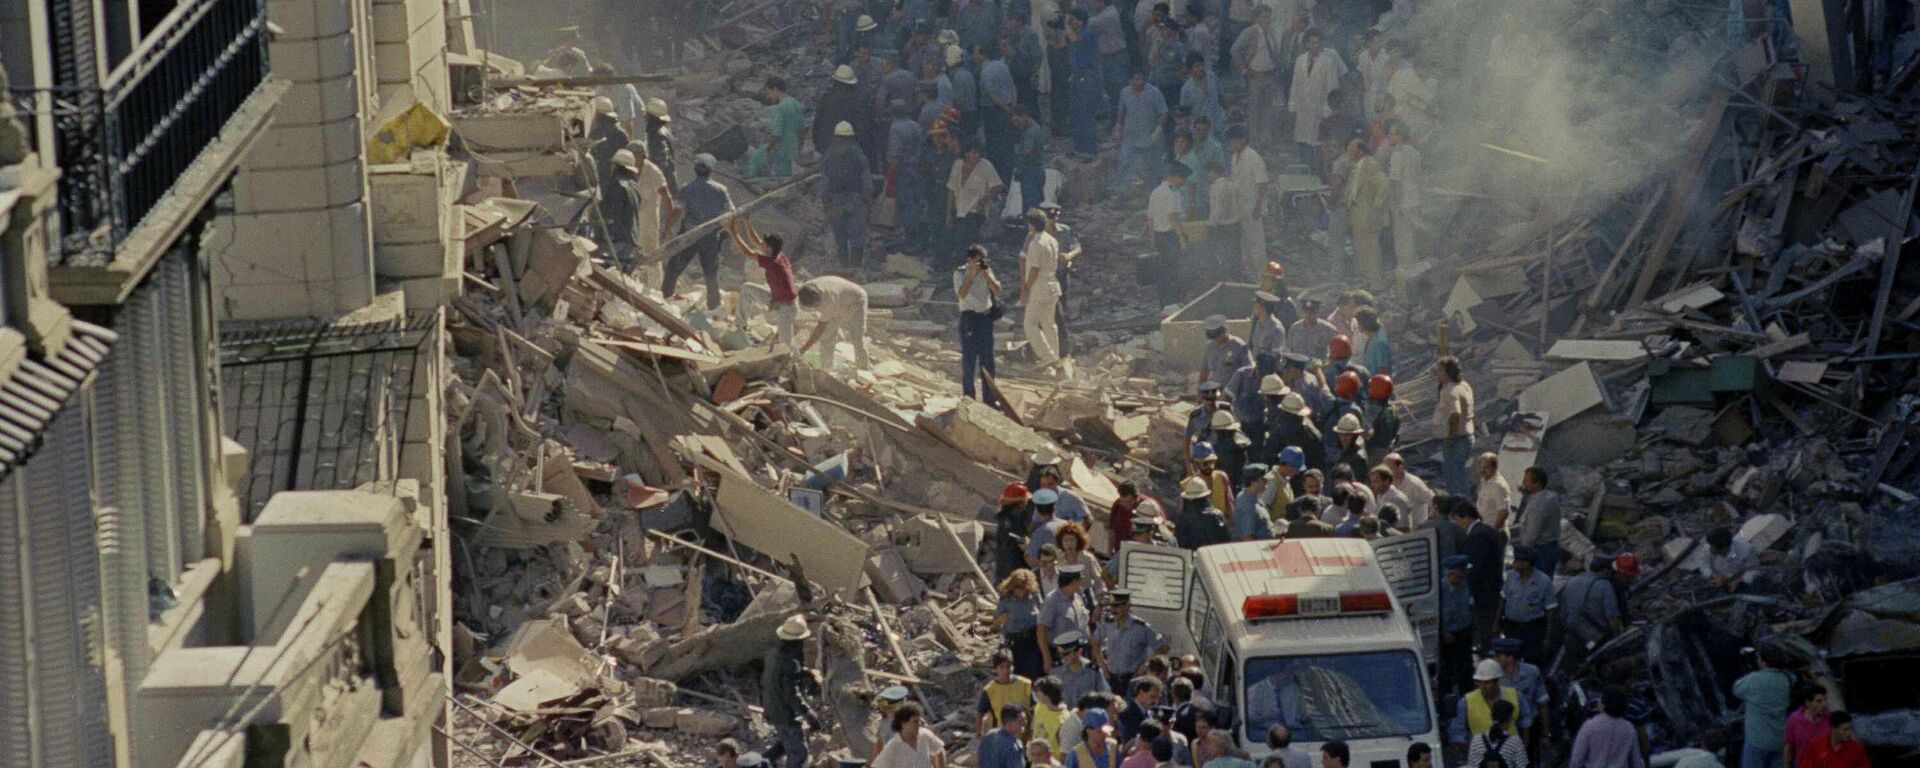 Trabajos de rescate luego del atentado a la Embajada de Israel en Argentina, 1992 - Sputnik Mundo, 1920, 26.07.2022